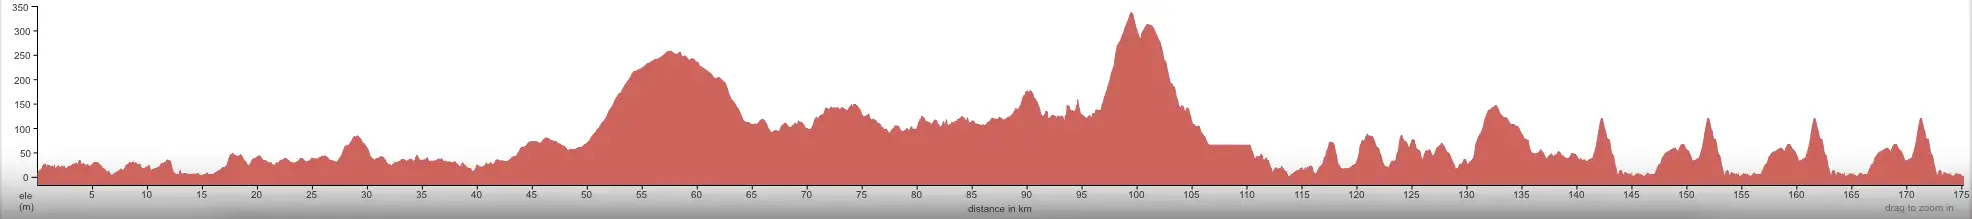 Tour des Fjords 2015 etape 4 - profil